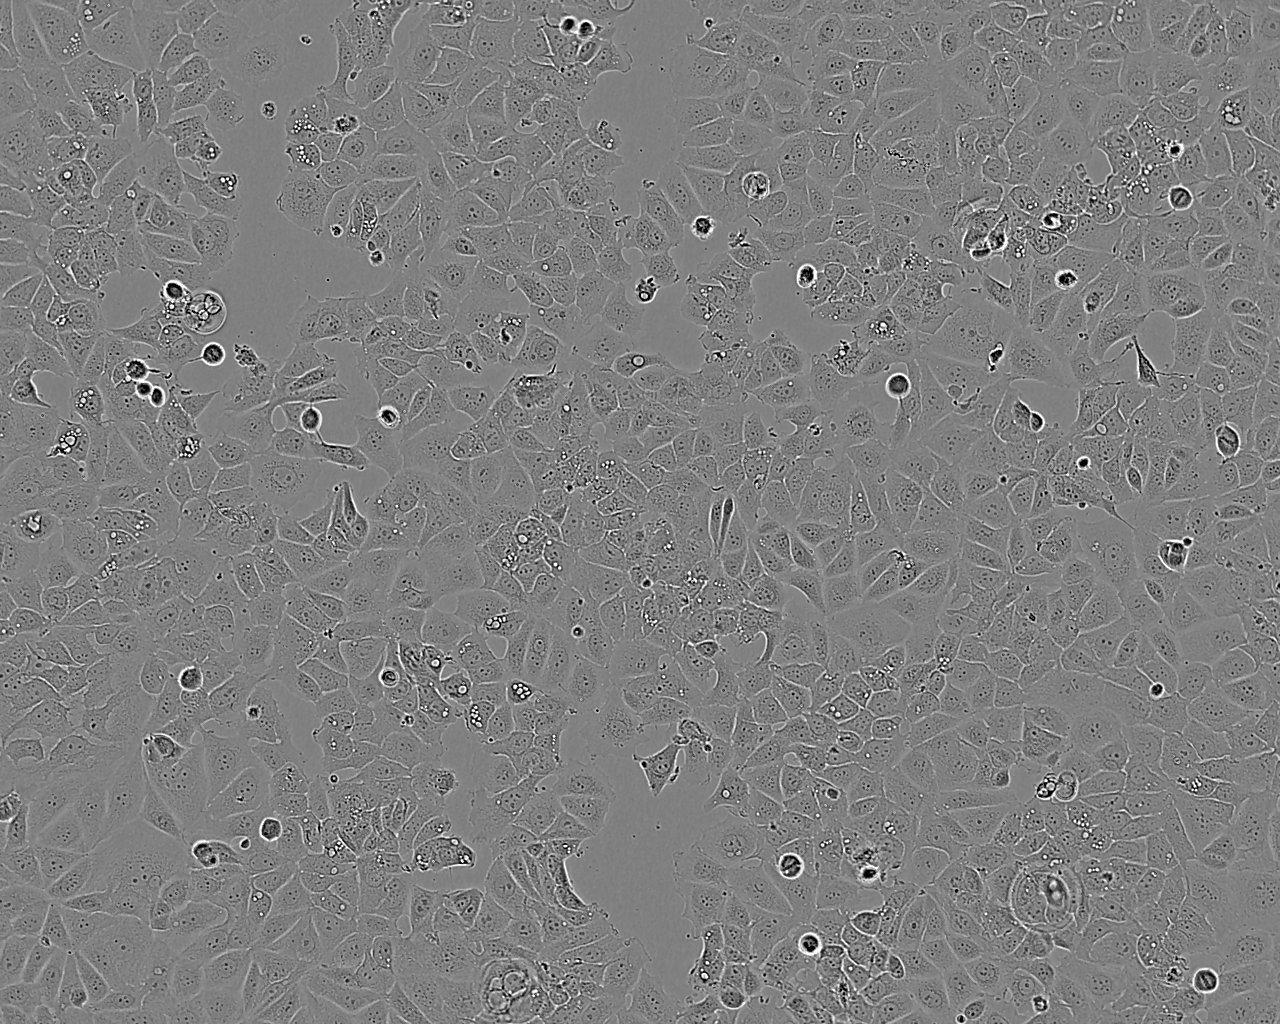 HCC2157 epithelioid cells人乳腺导管癌细胞系,HCC2157 epithelioid cells